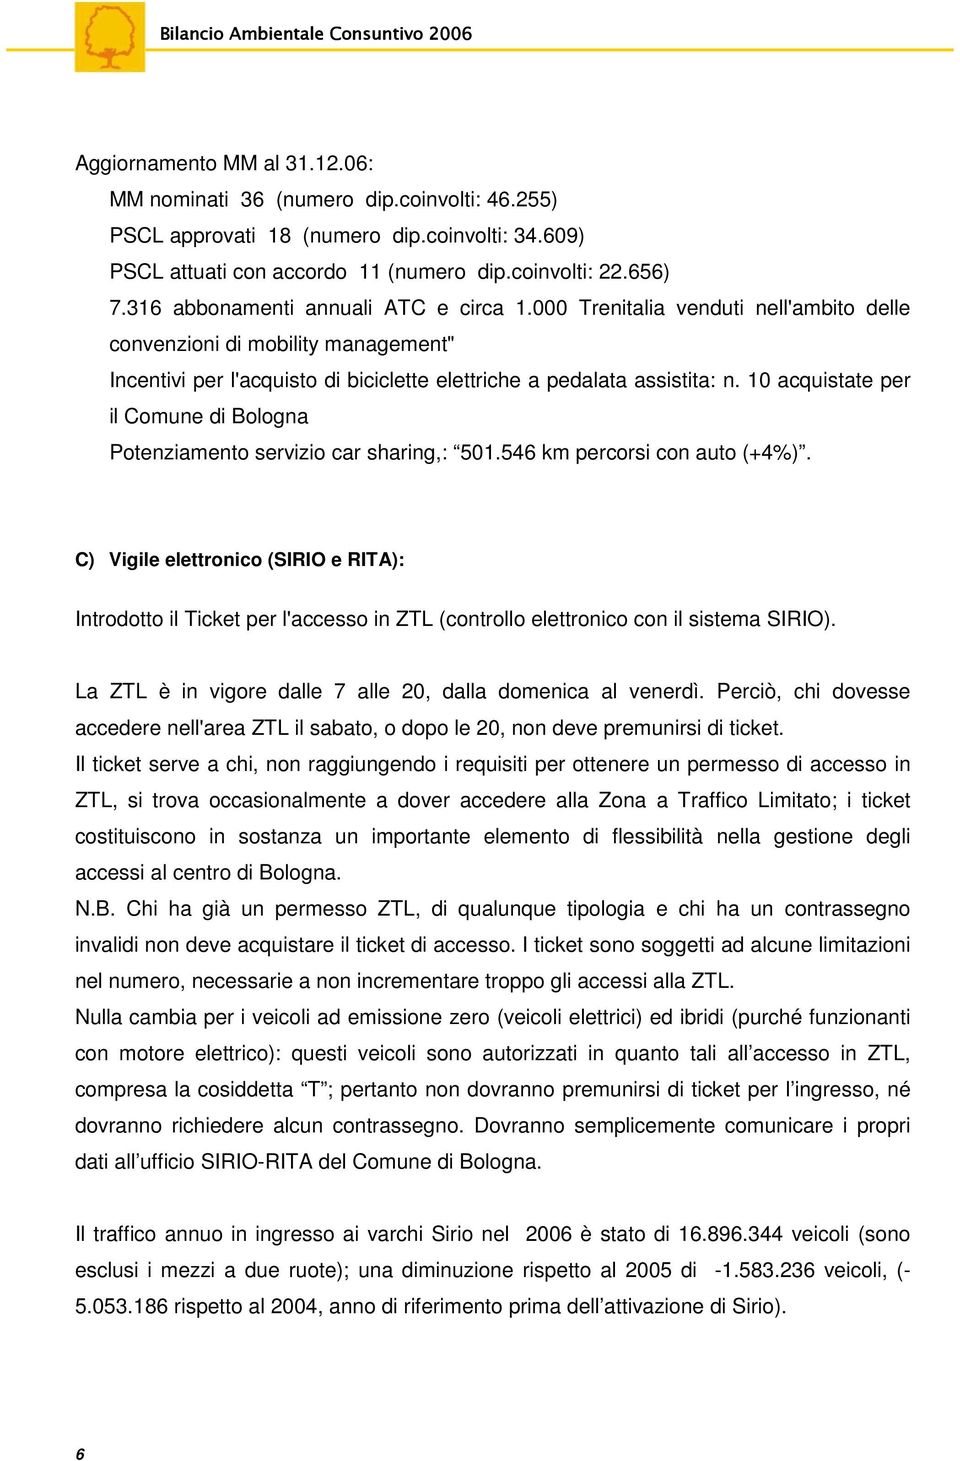 10 acquistate per il Comune di Bologna Potenziamento servizio car sharing,: 501.546 km percorsi con auto (+4%).